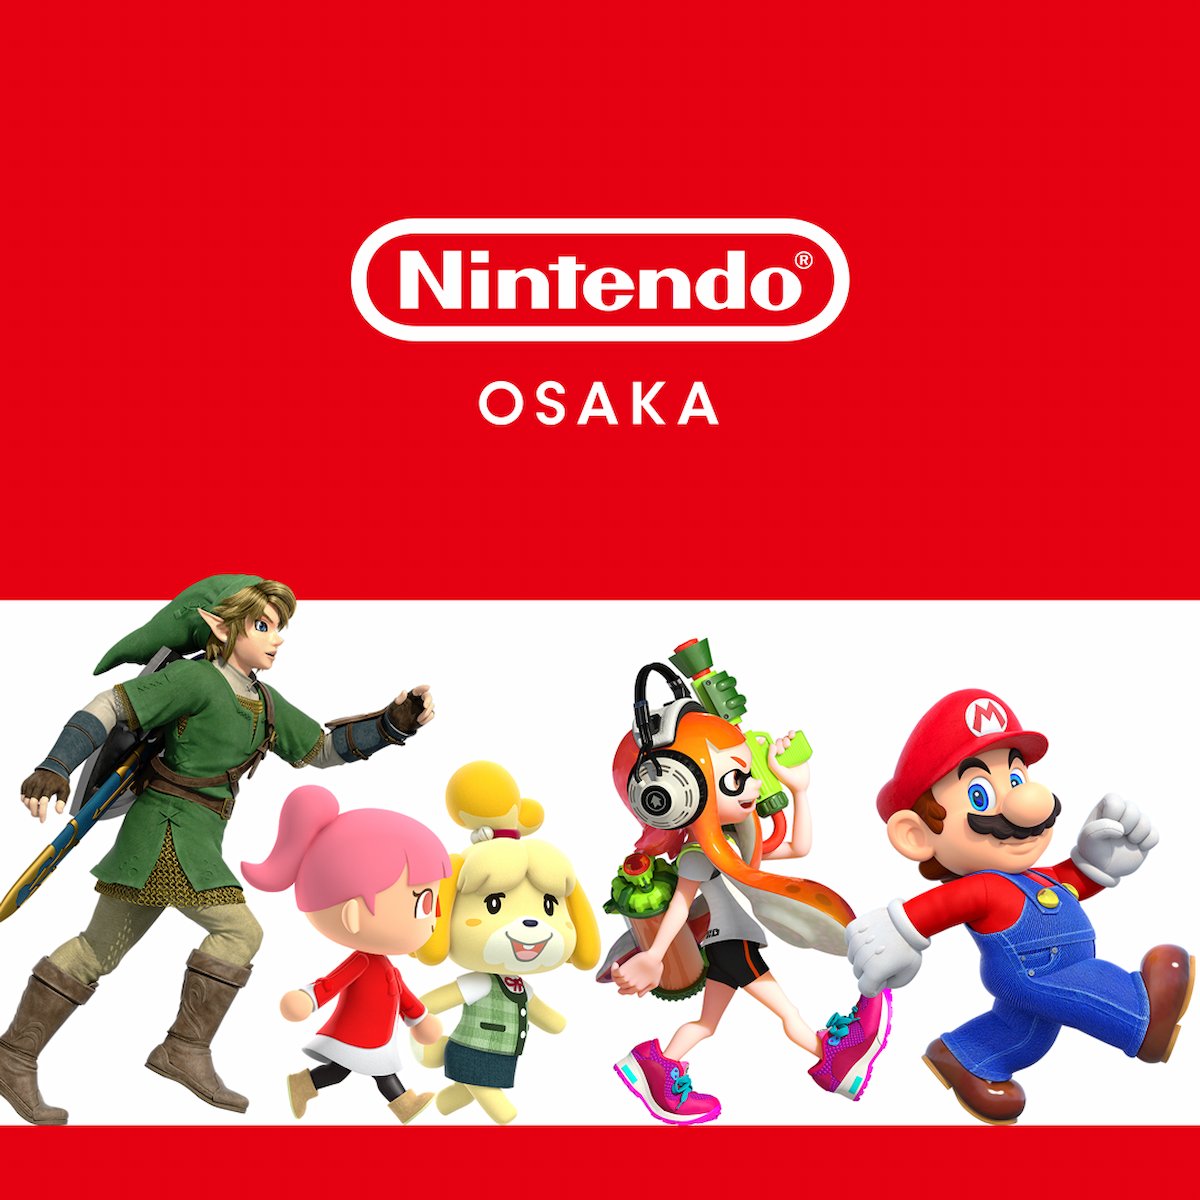 Nintendo OSAKA